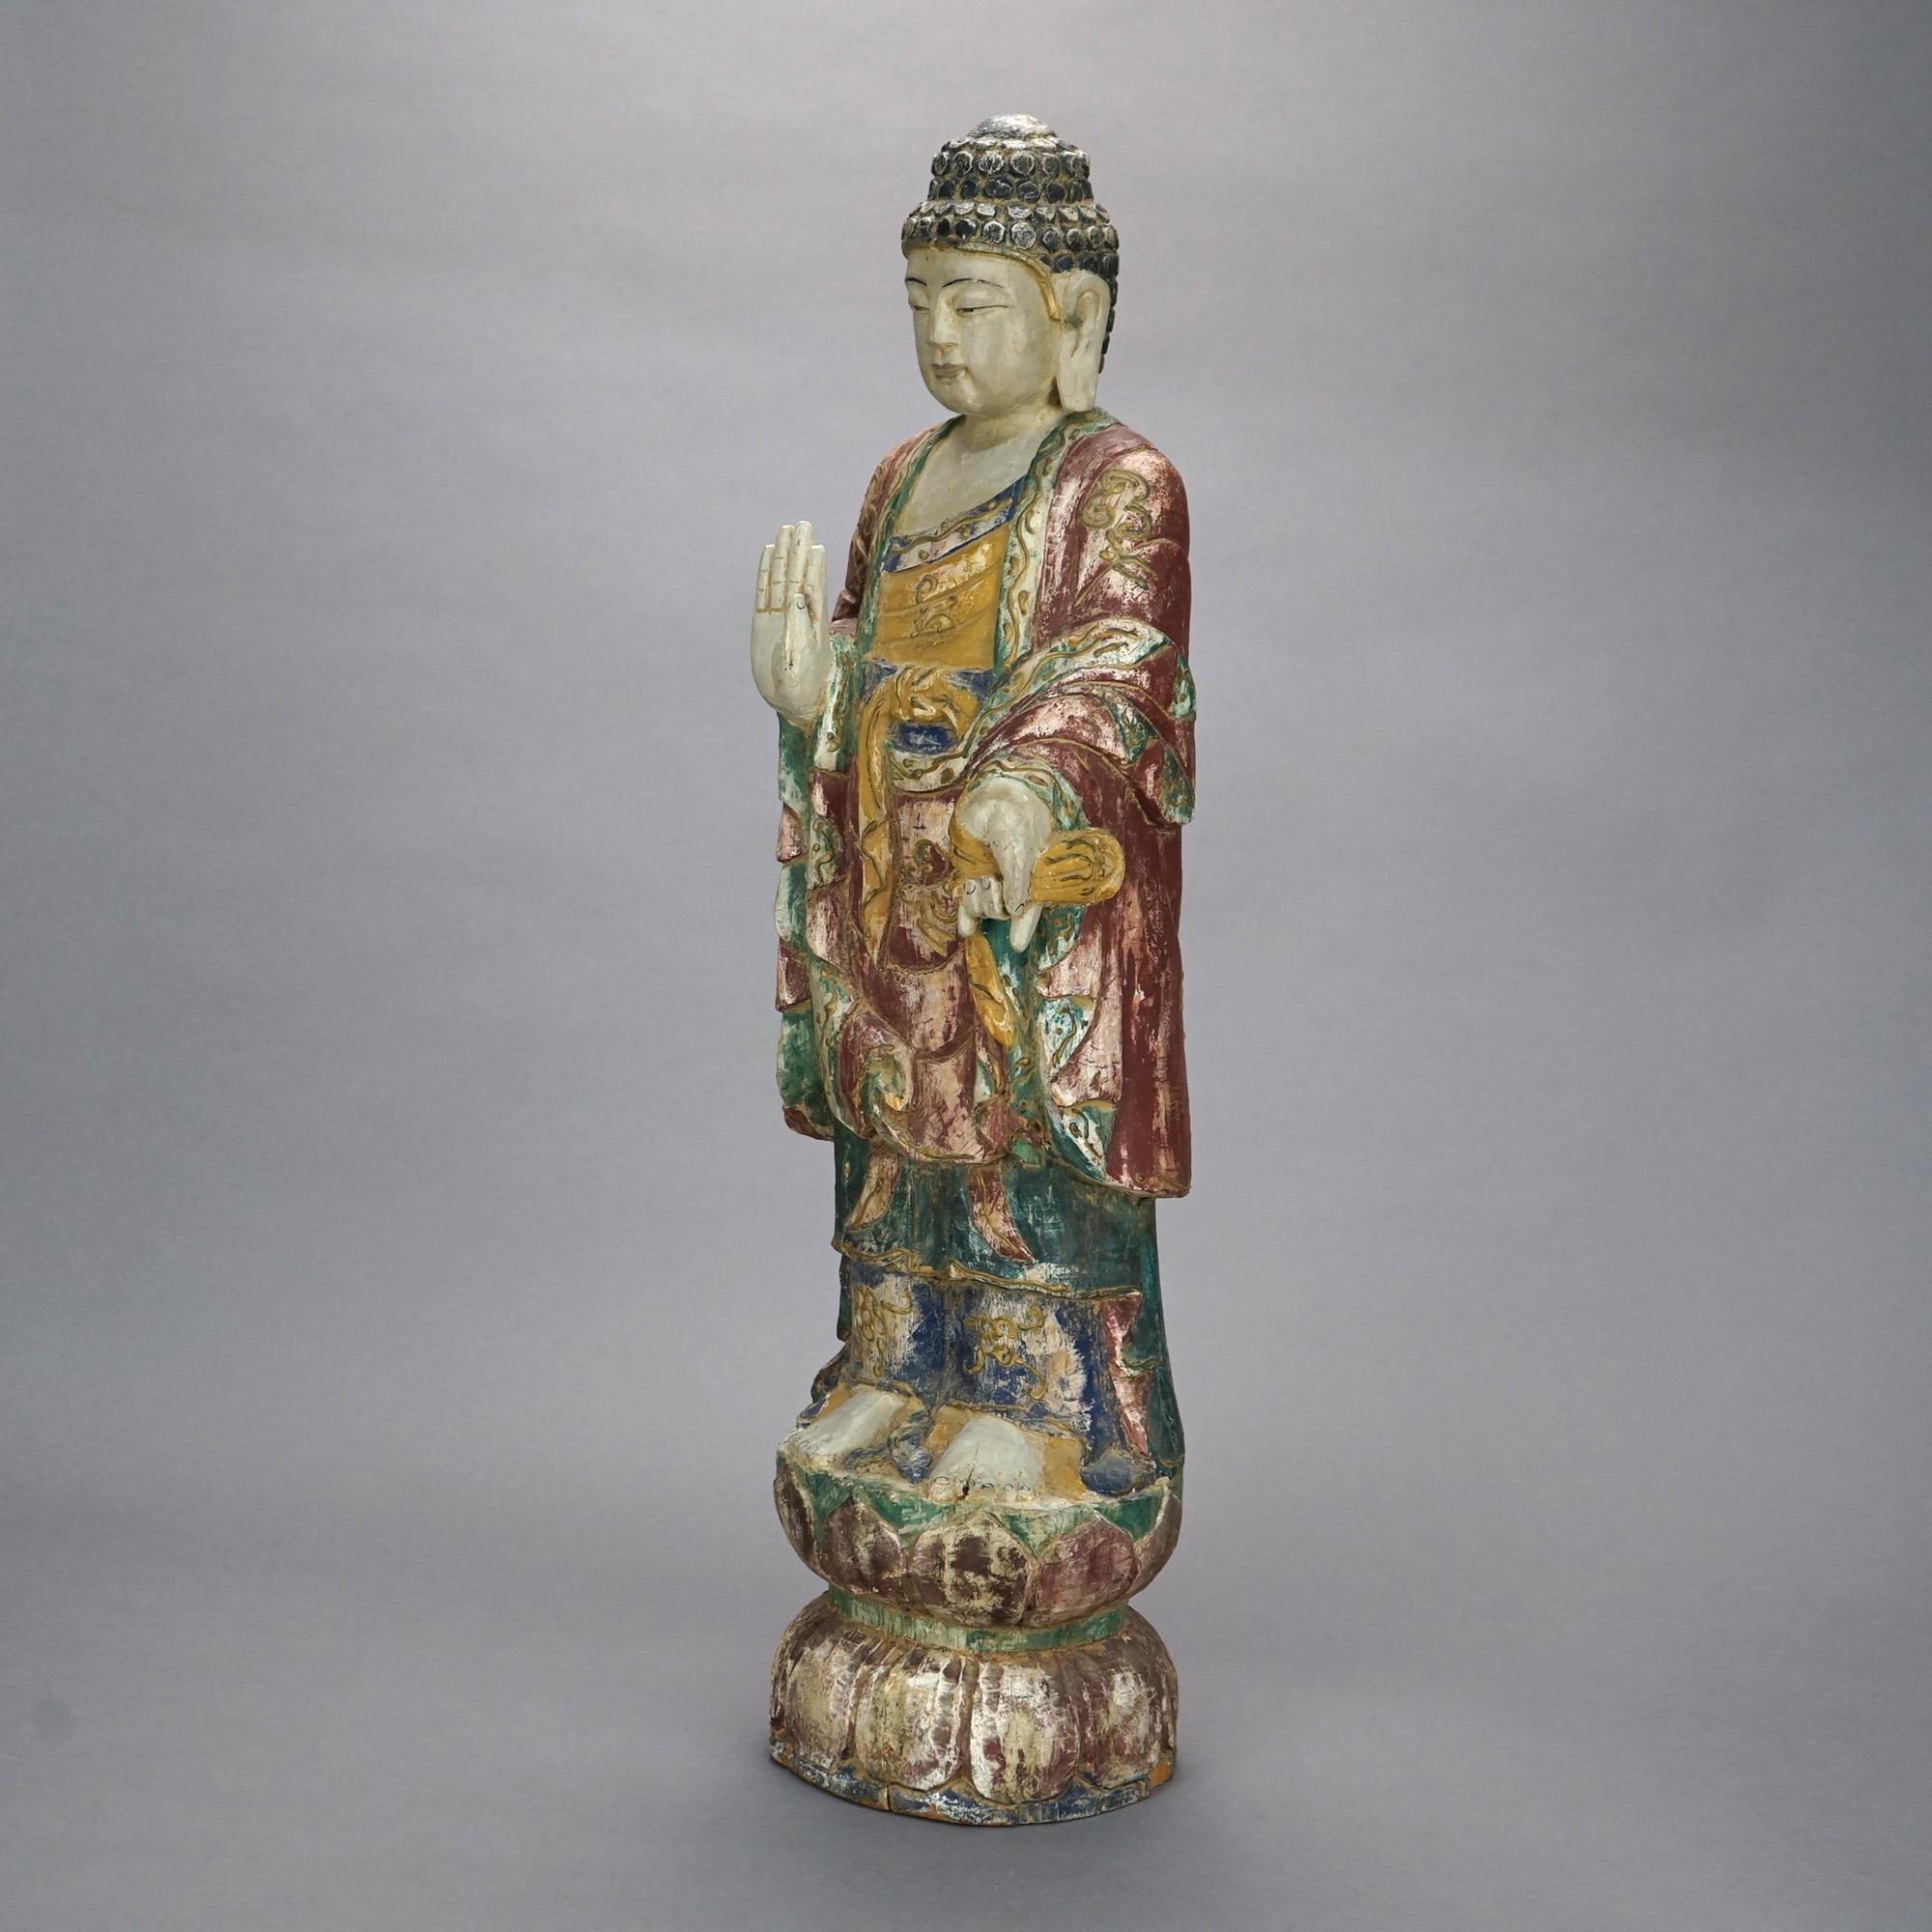 Une figure chinoise ancienne offre une sculpture en bois sculpté polychromé d'un Bouddha debout, 20ème siècle

Mesures- 29''H x 7.25''W x 6.5''D